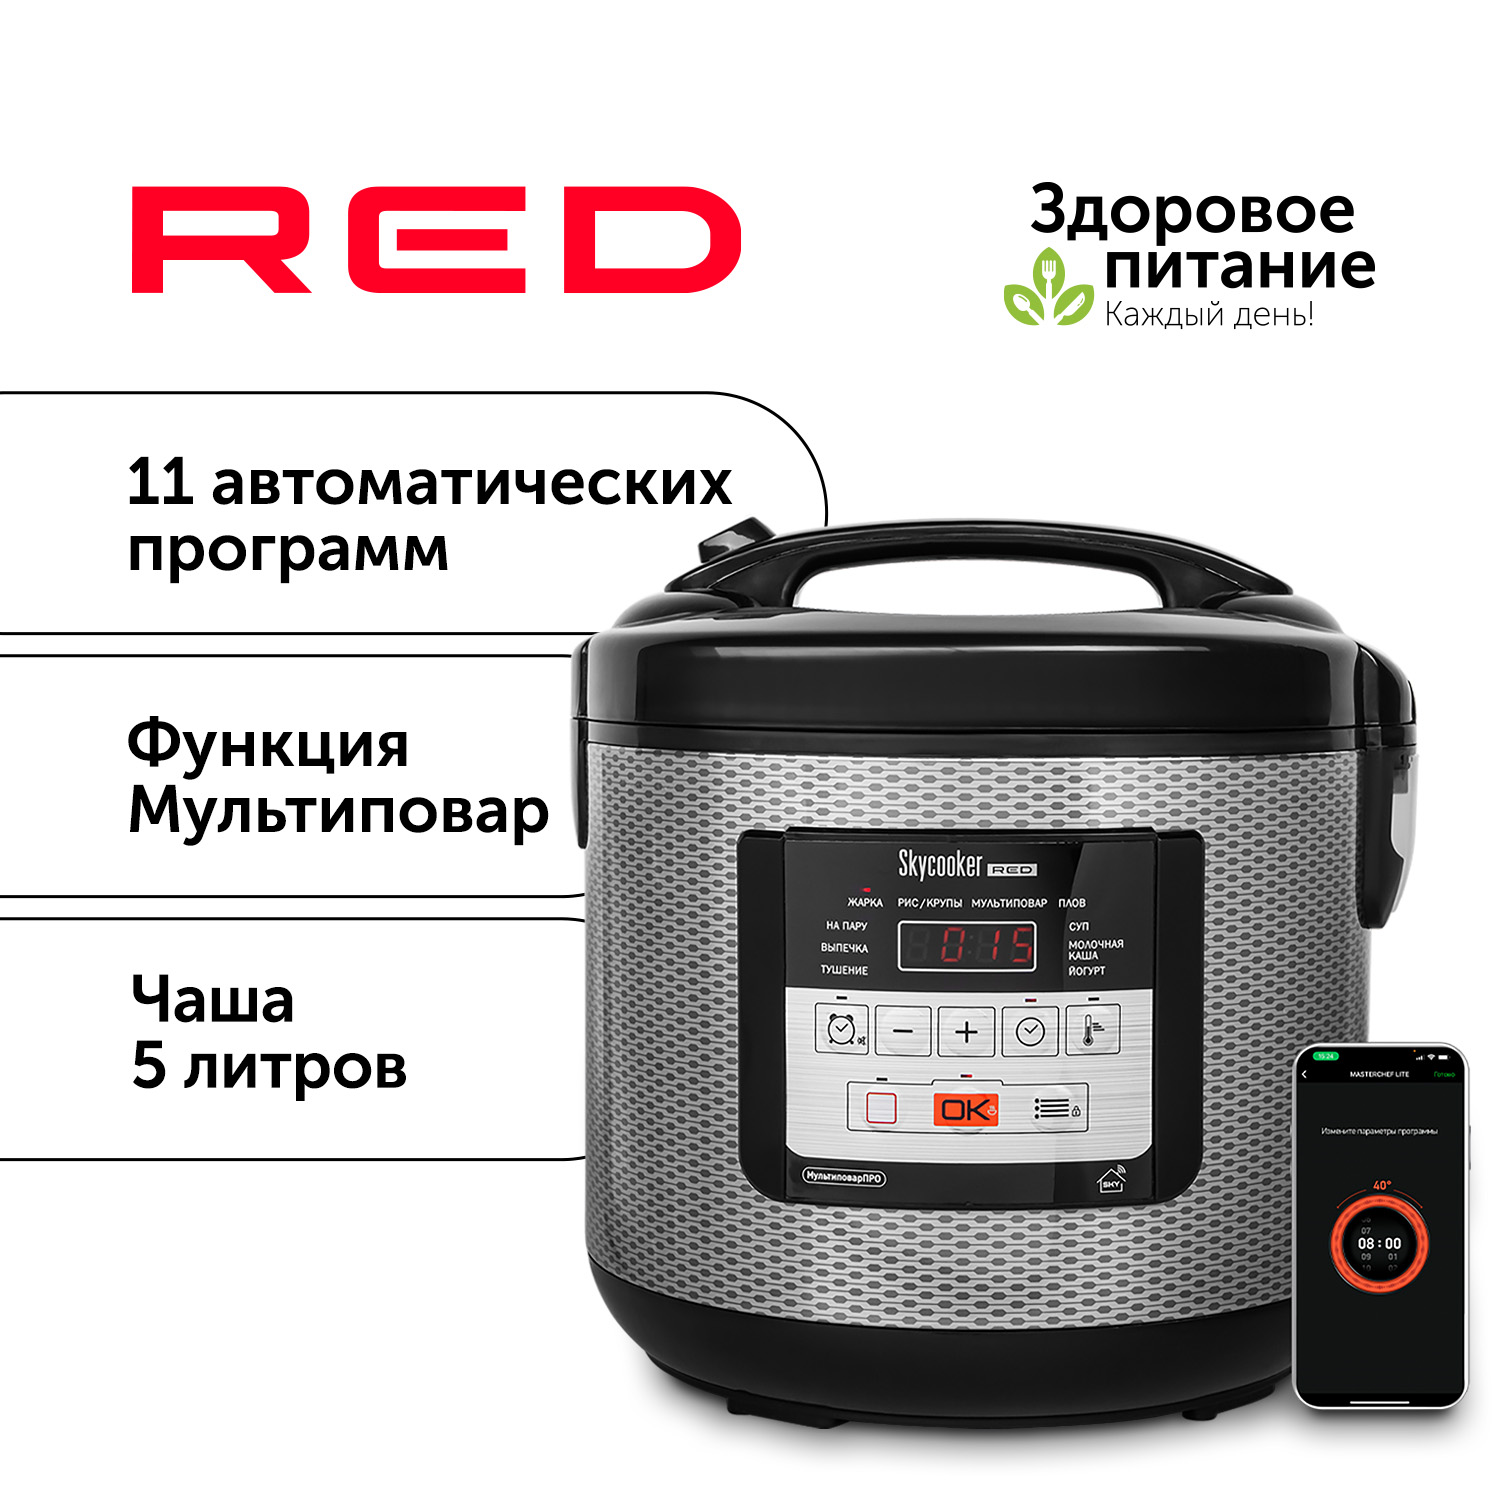 Мультиварка RED SOLUTION RMC-M224S черный, купить в Москве, цены в интернет-магазинах на Мегамаркет